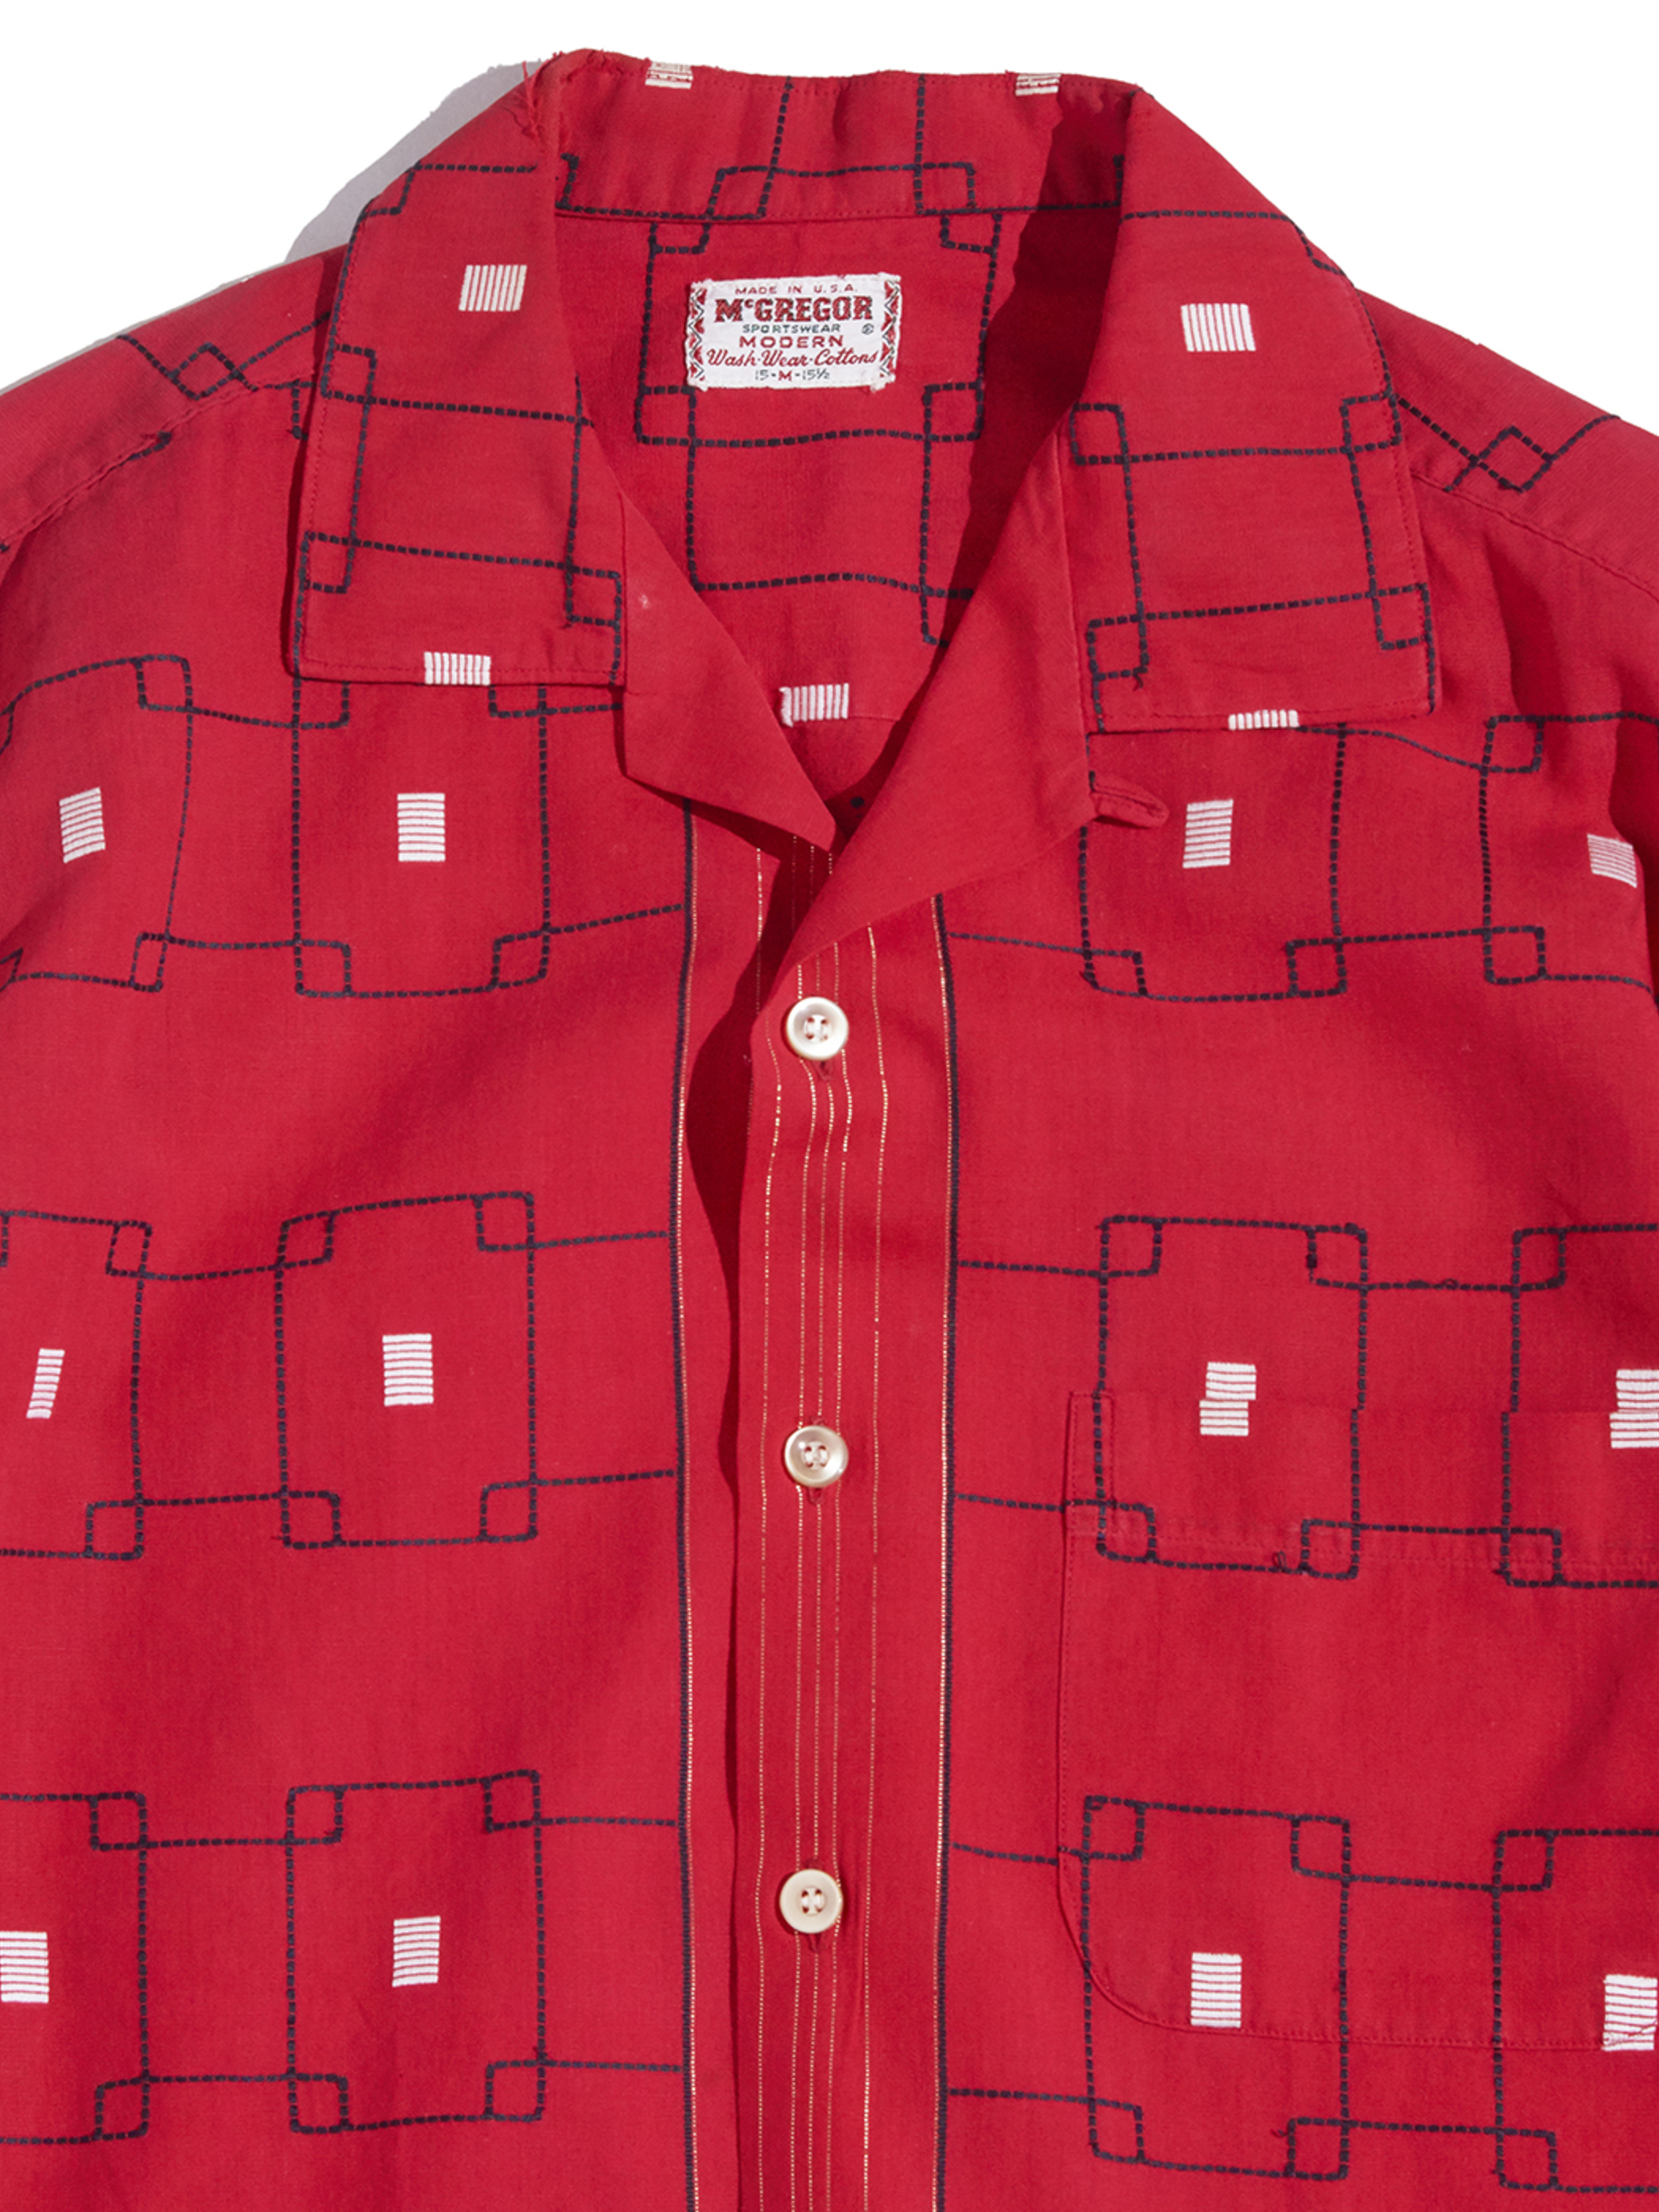 1960s "McGREGOR" cotton atomic pattern shirt -RED-